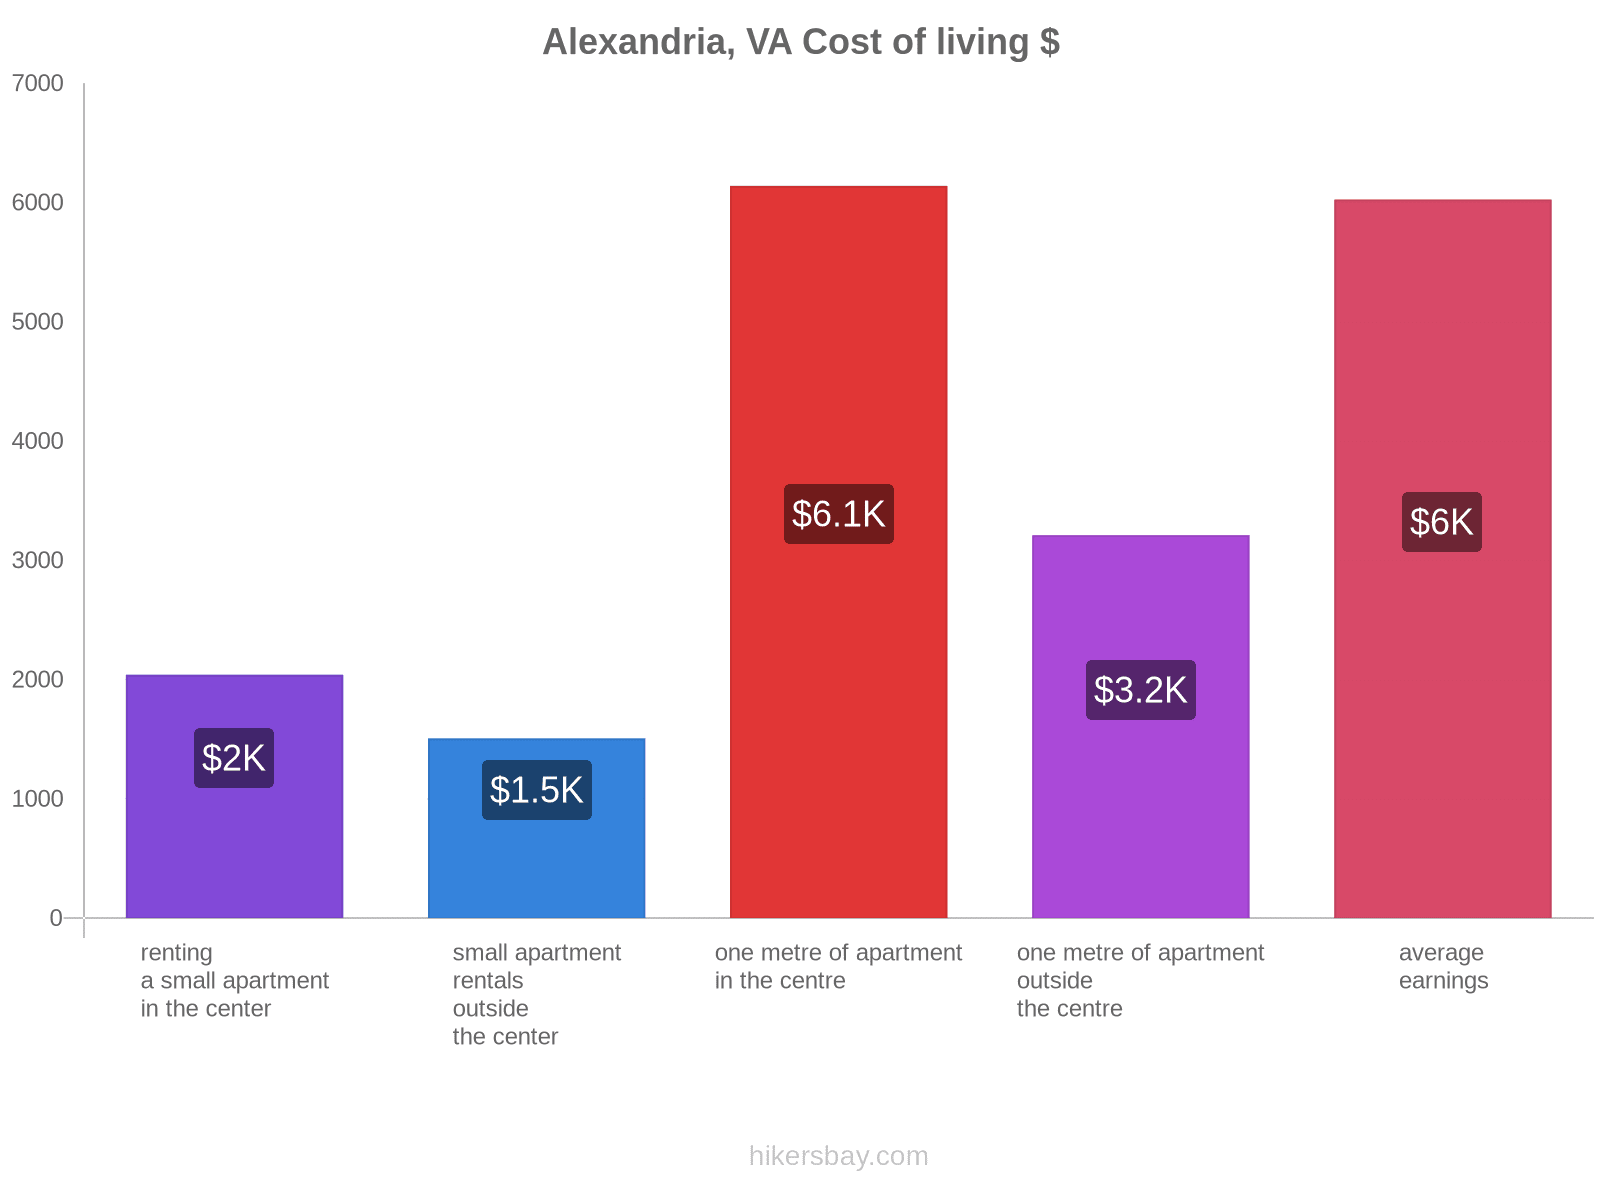 Alexandria, VA cost of living hikersbay.com